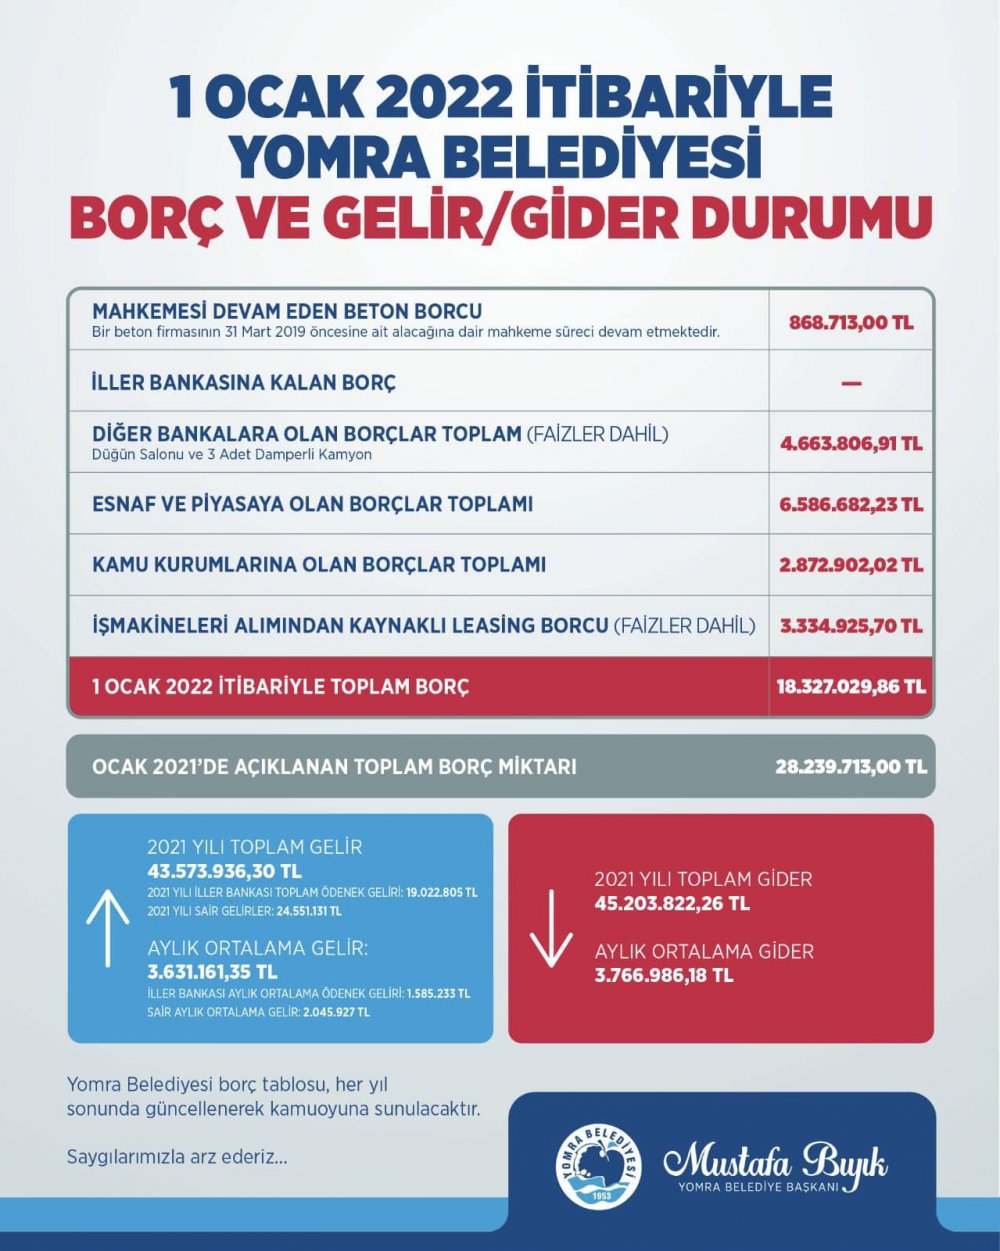 Yomra Belediyesi'nin Borcu 10 milyon TL azaldı